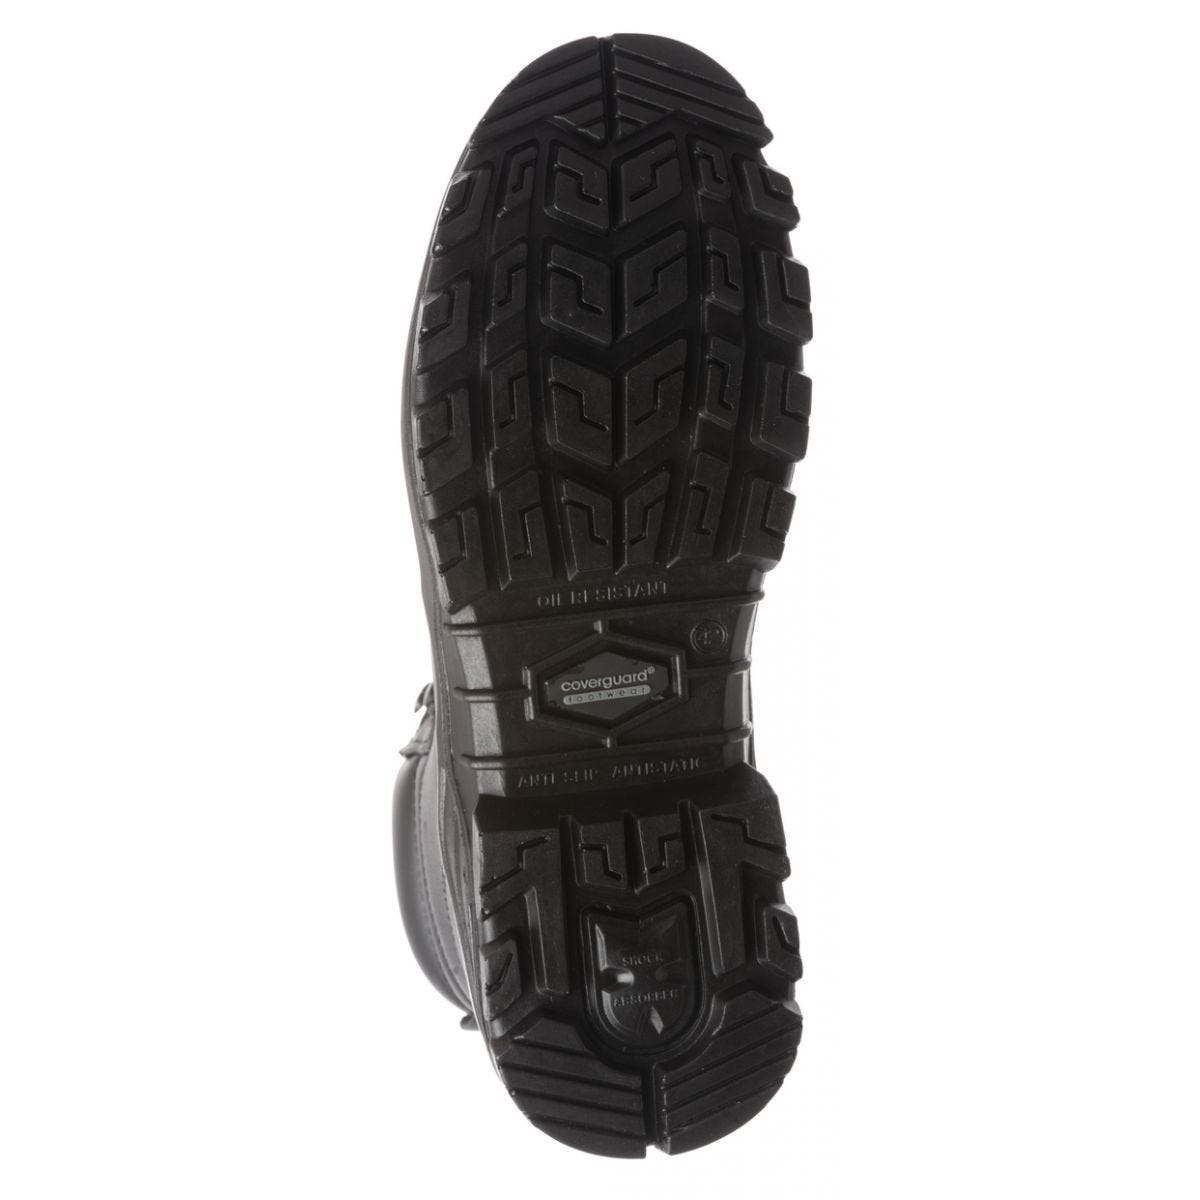 Chaussure de sécurité AVENTURINE S3 haute noir composite - COVERGUARD - Taille 40 1